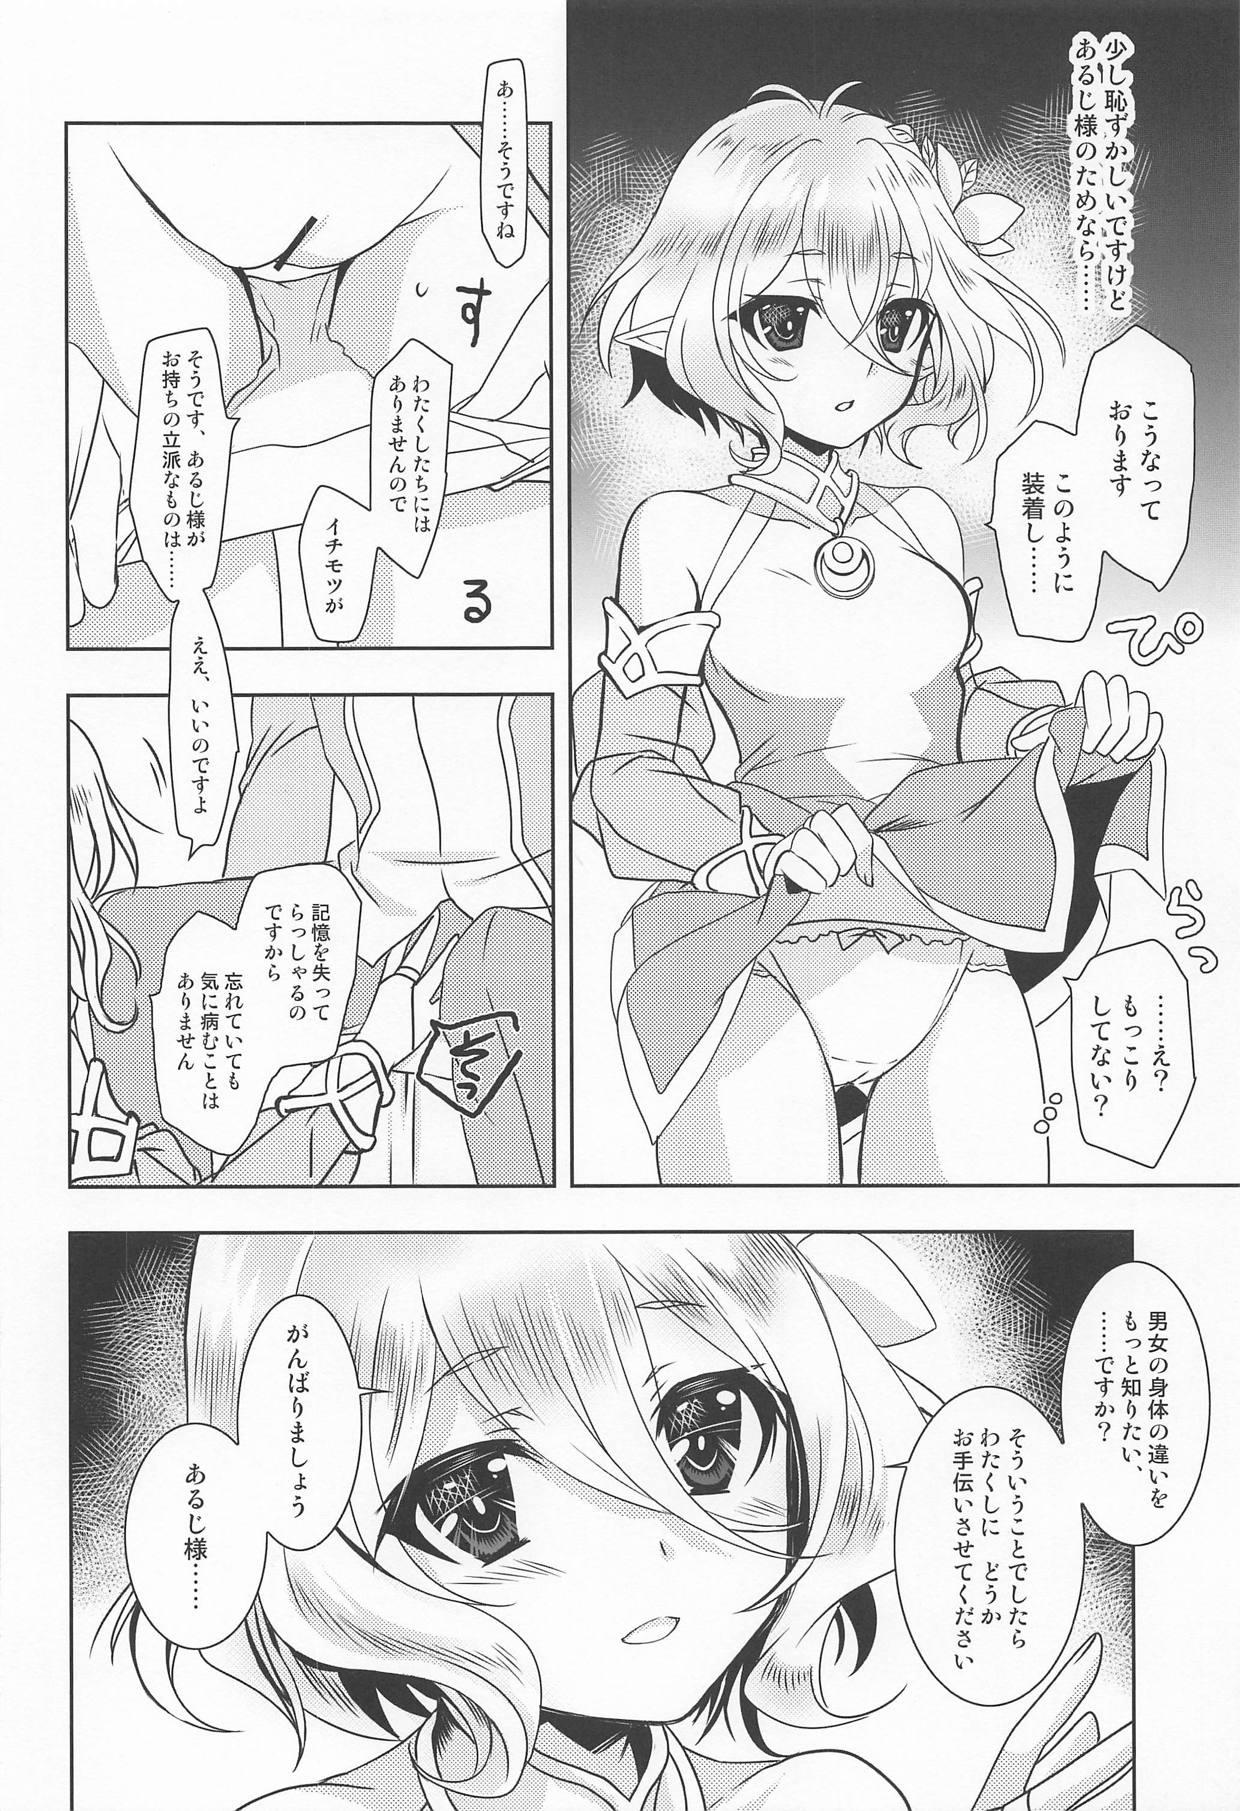 Emo Aruji-sama ni Naisho no Memory Piece - Princess connect Teenfuns - Page 5